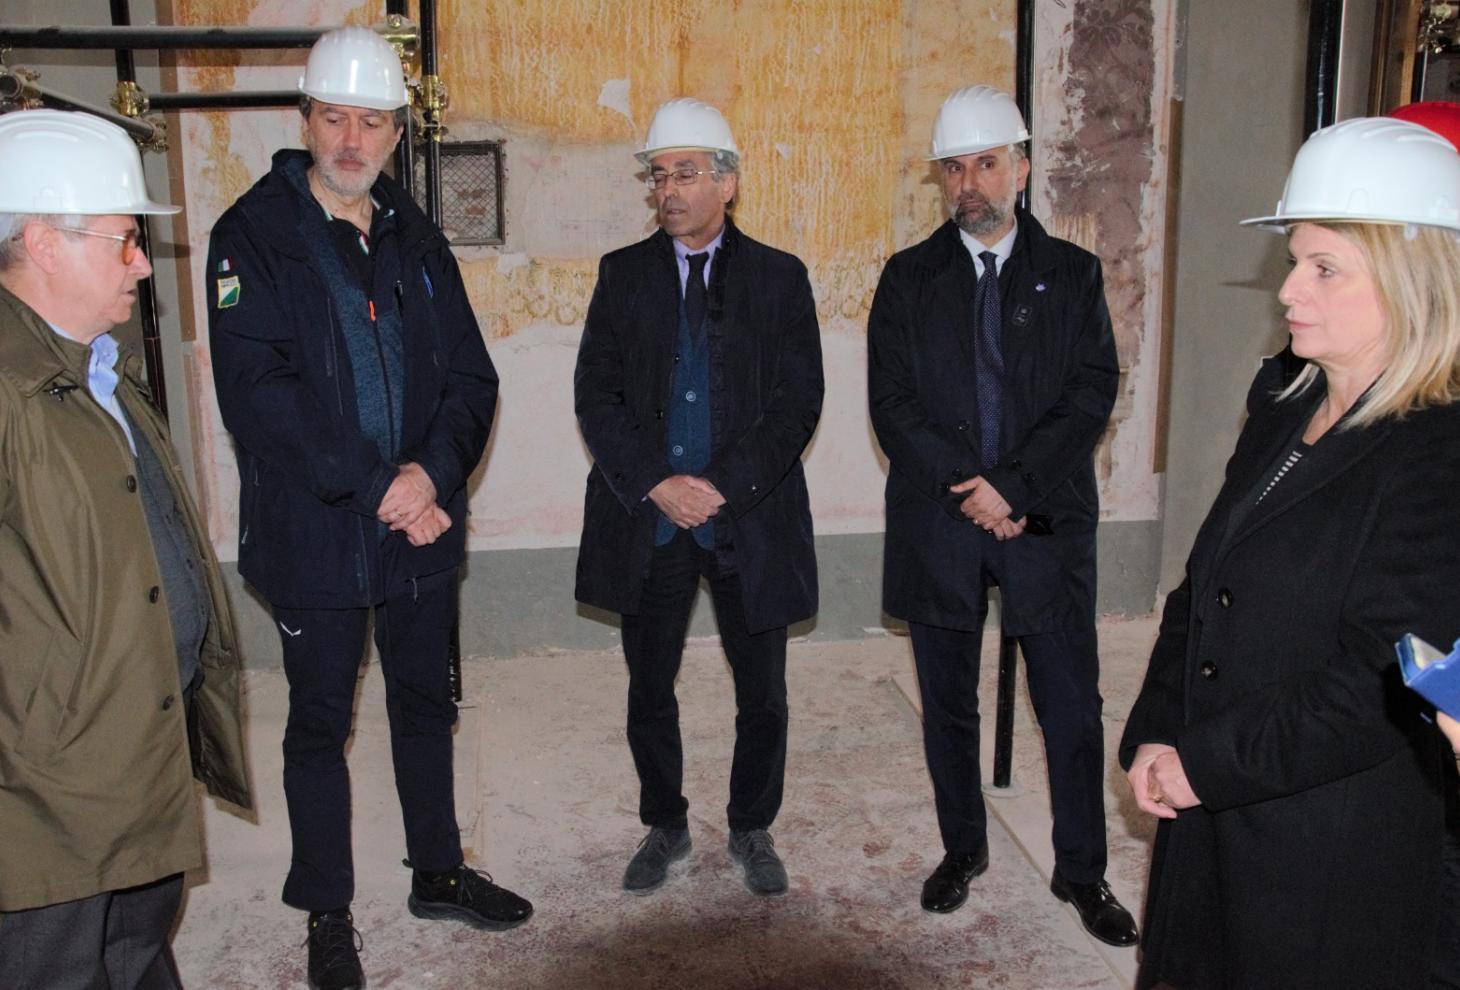 Ricorrenza terremoto L'Aquila: Marsilio verifica stato dei lavori nei palazzi storici